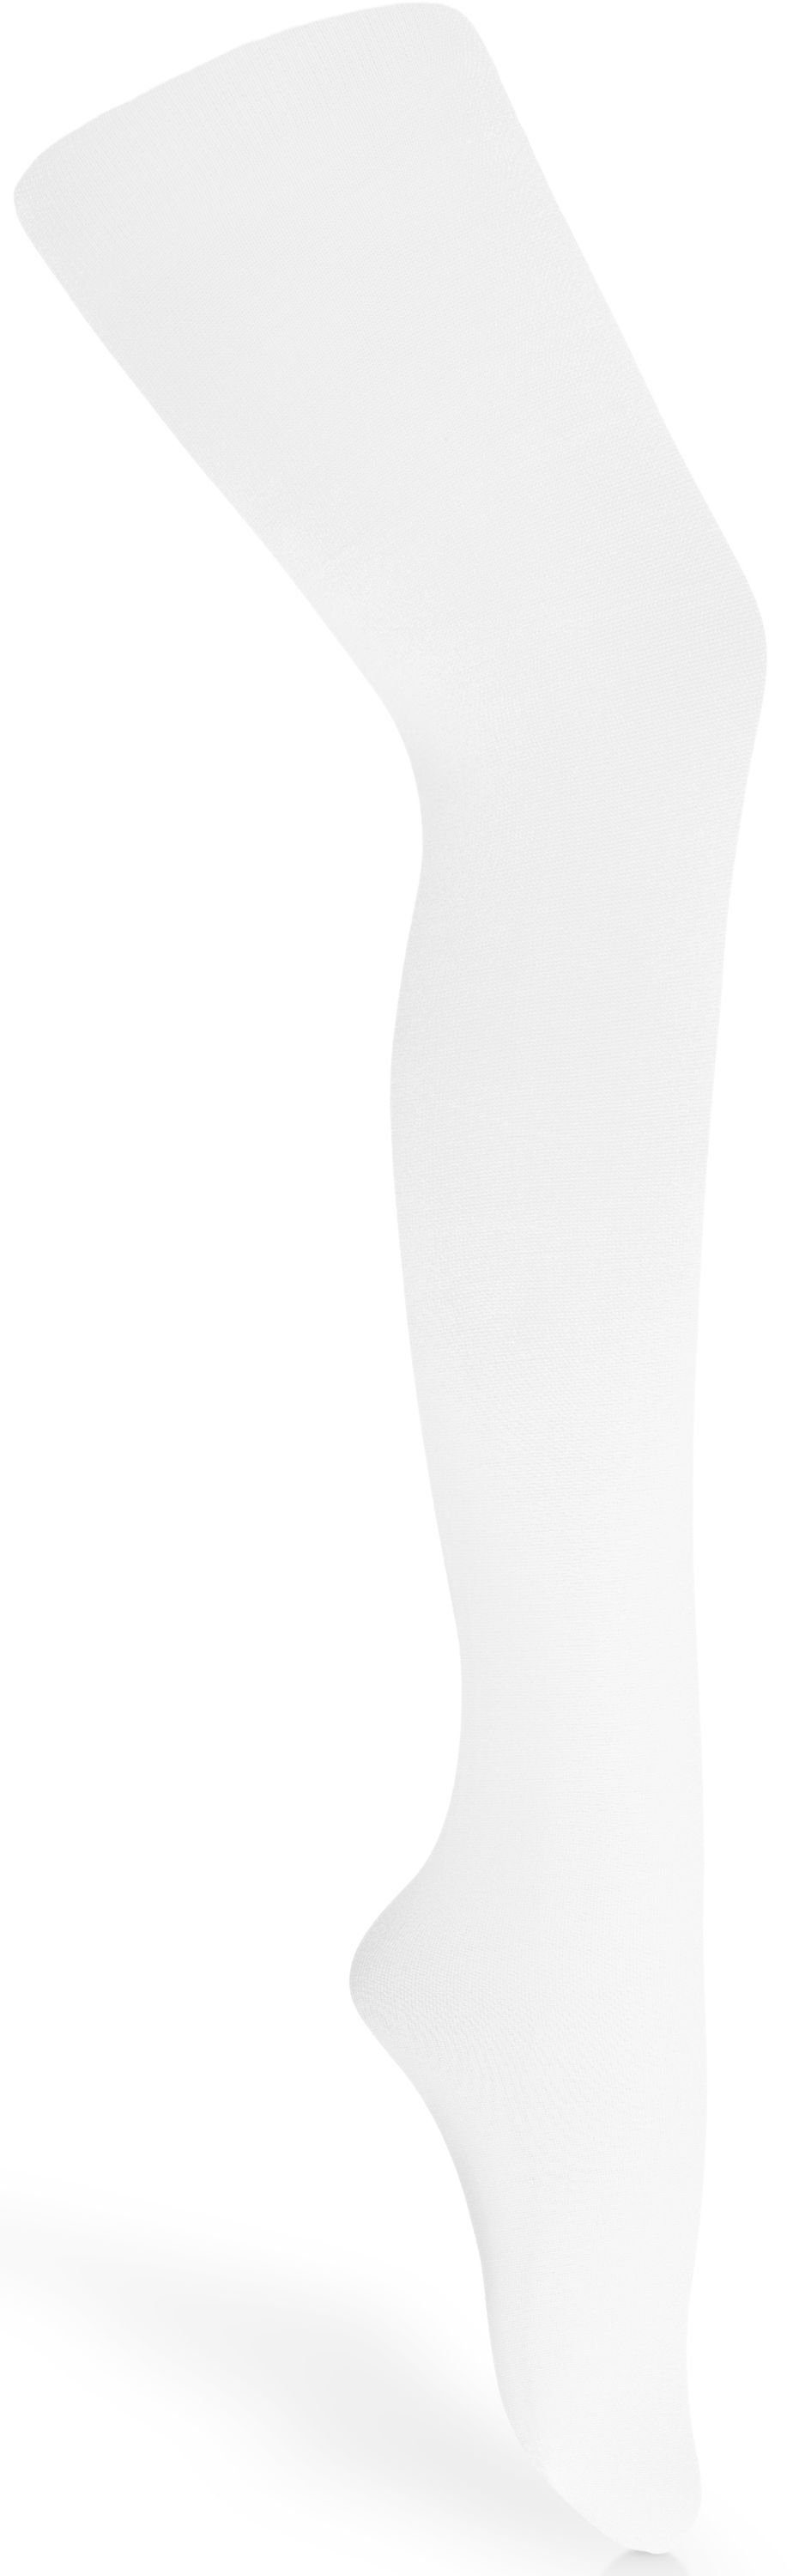 Strumpfhose (1 Kinder 60 St) Fuchsie-80 DEN 60 DEN Microfaser für Style Mädchen Strumpfhose Merry